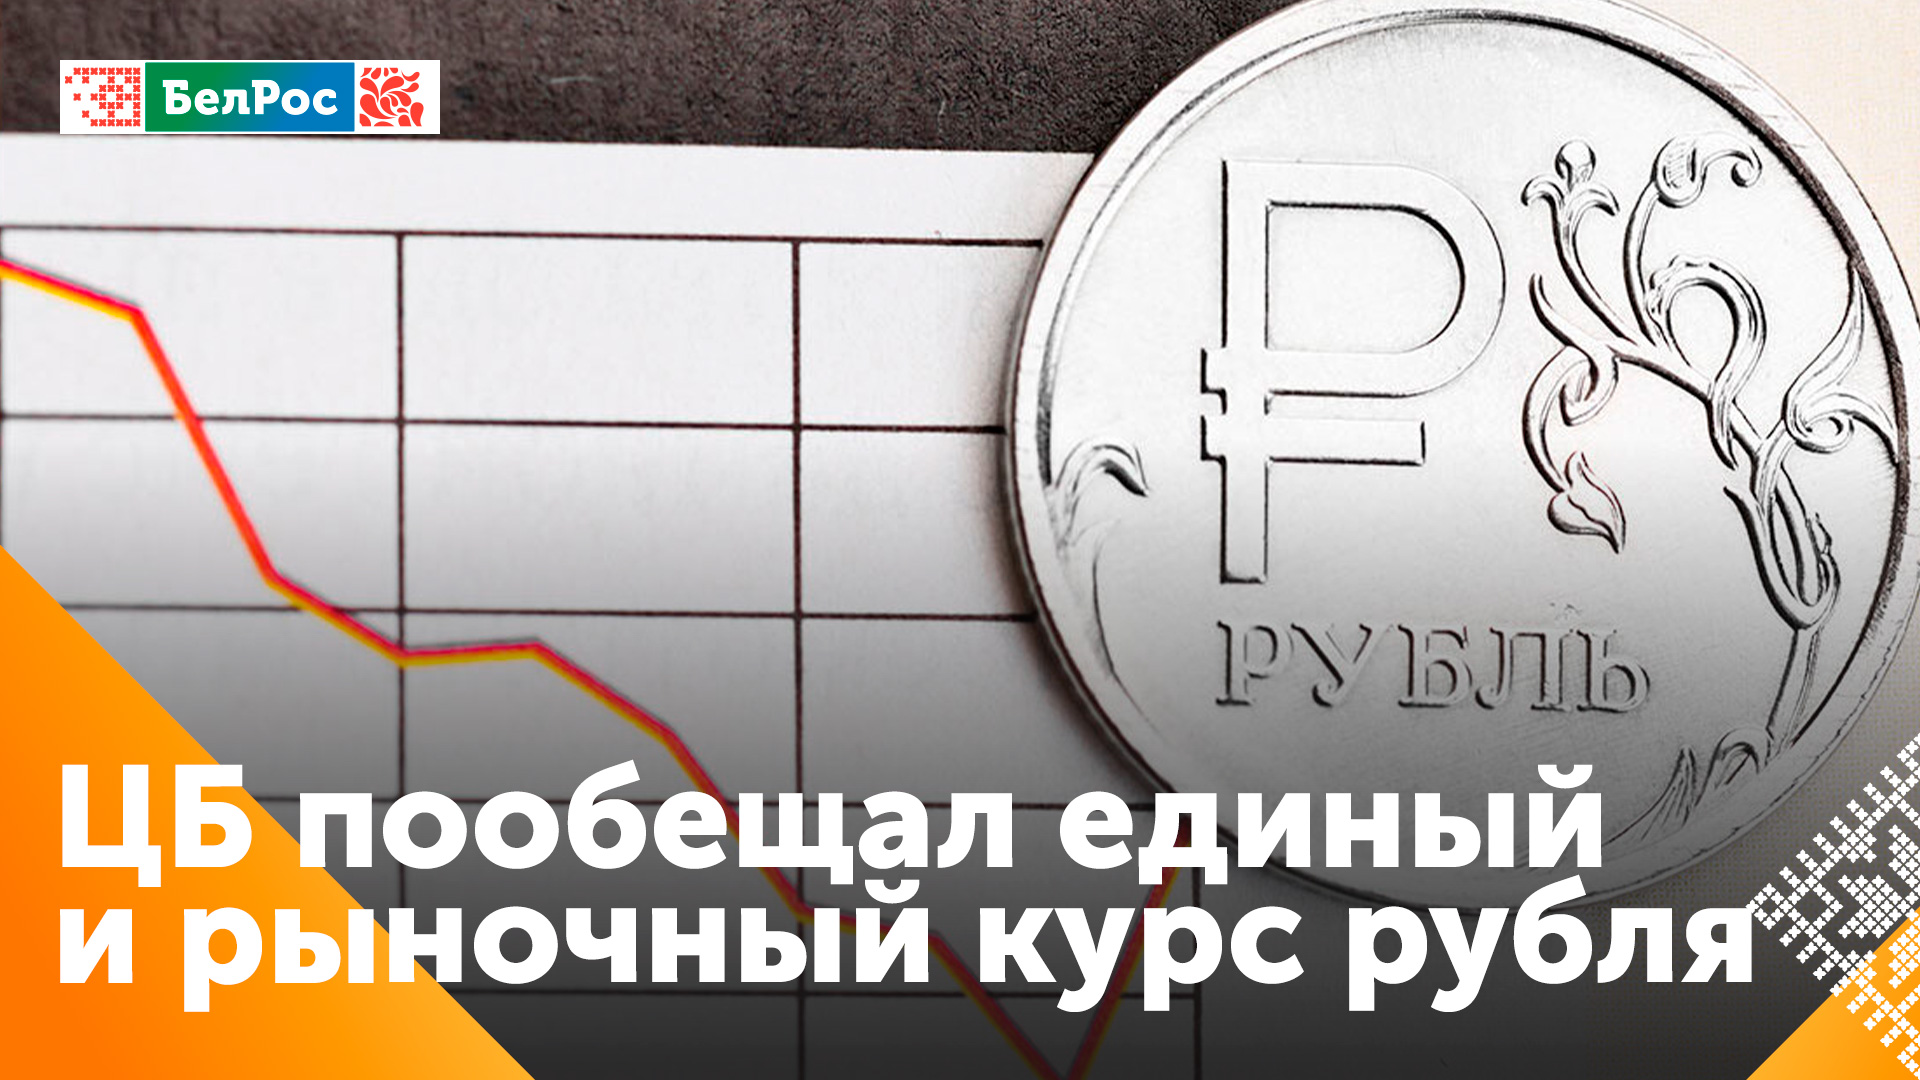 Центробанк РФ: курс рубля останется единым и рыночным